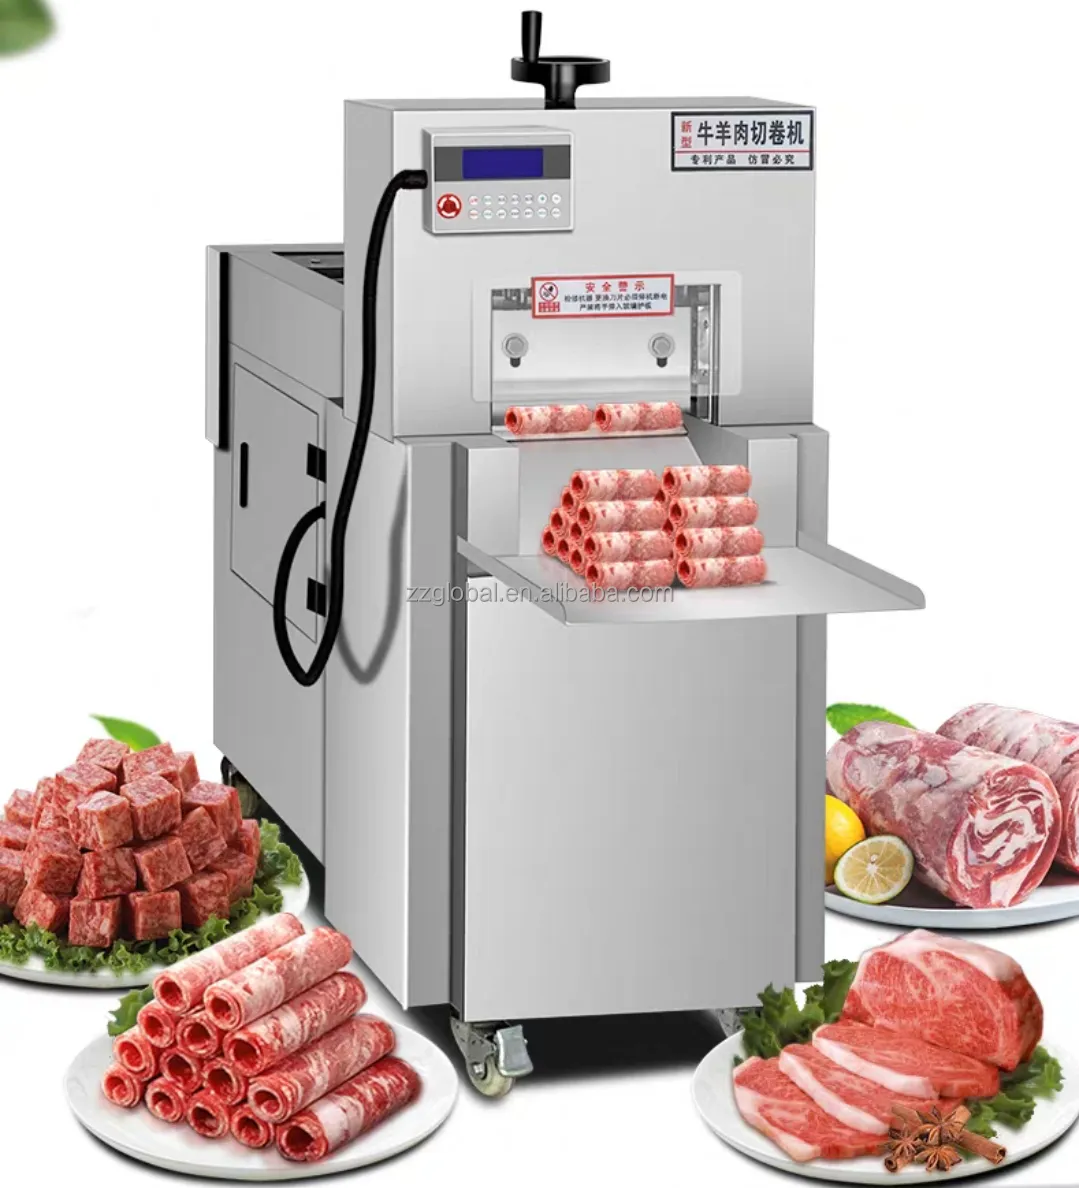 Global rolls mutton beef frozen cutting meat machine bacon slice meat cutting machine meet cutter machine